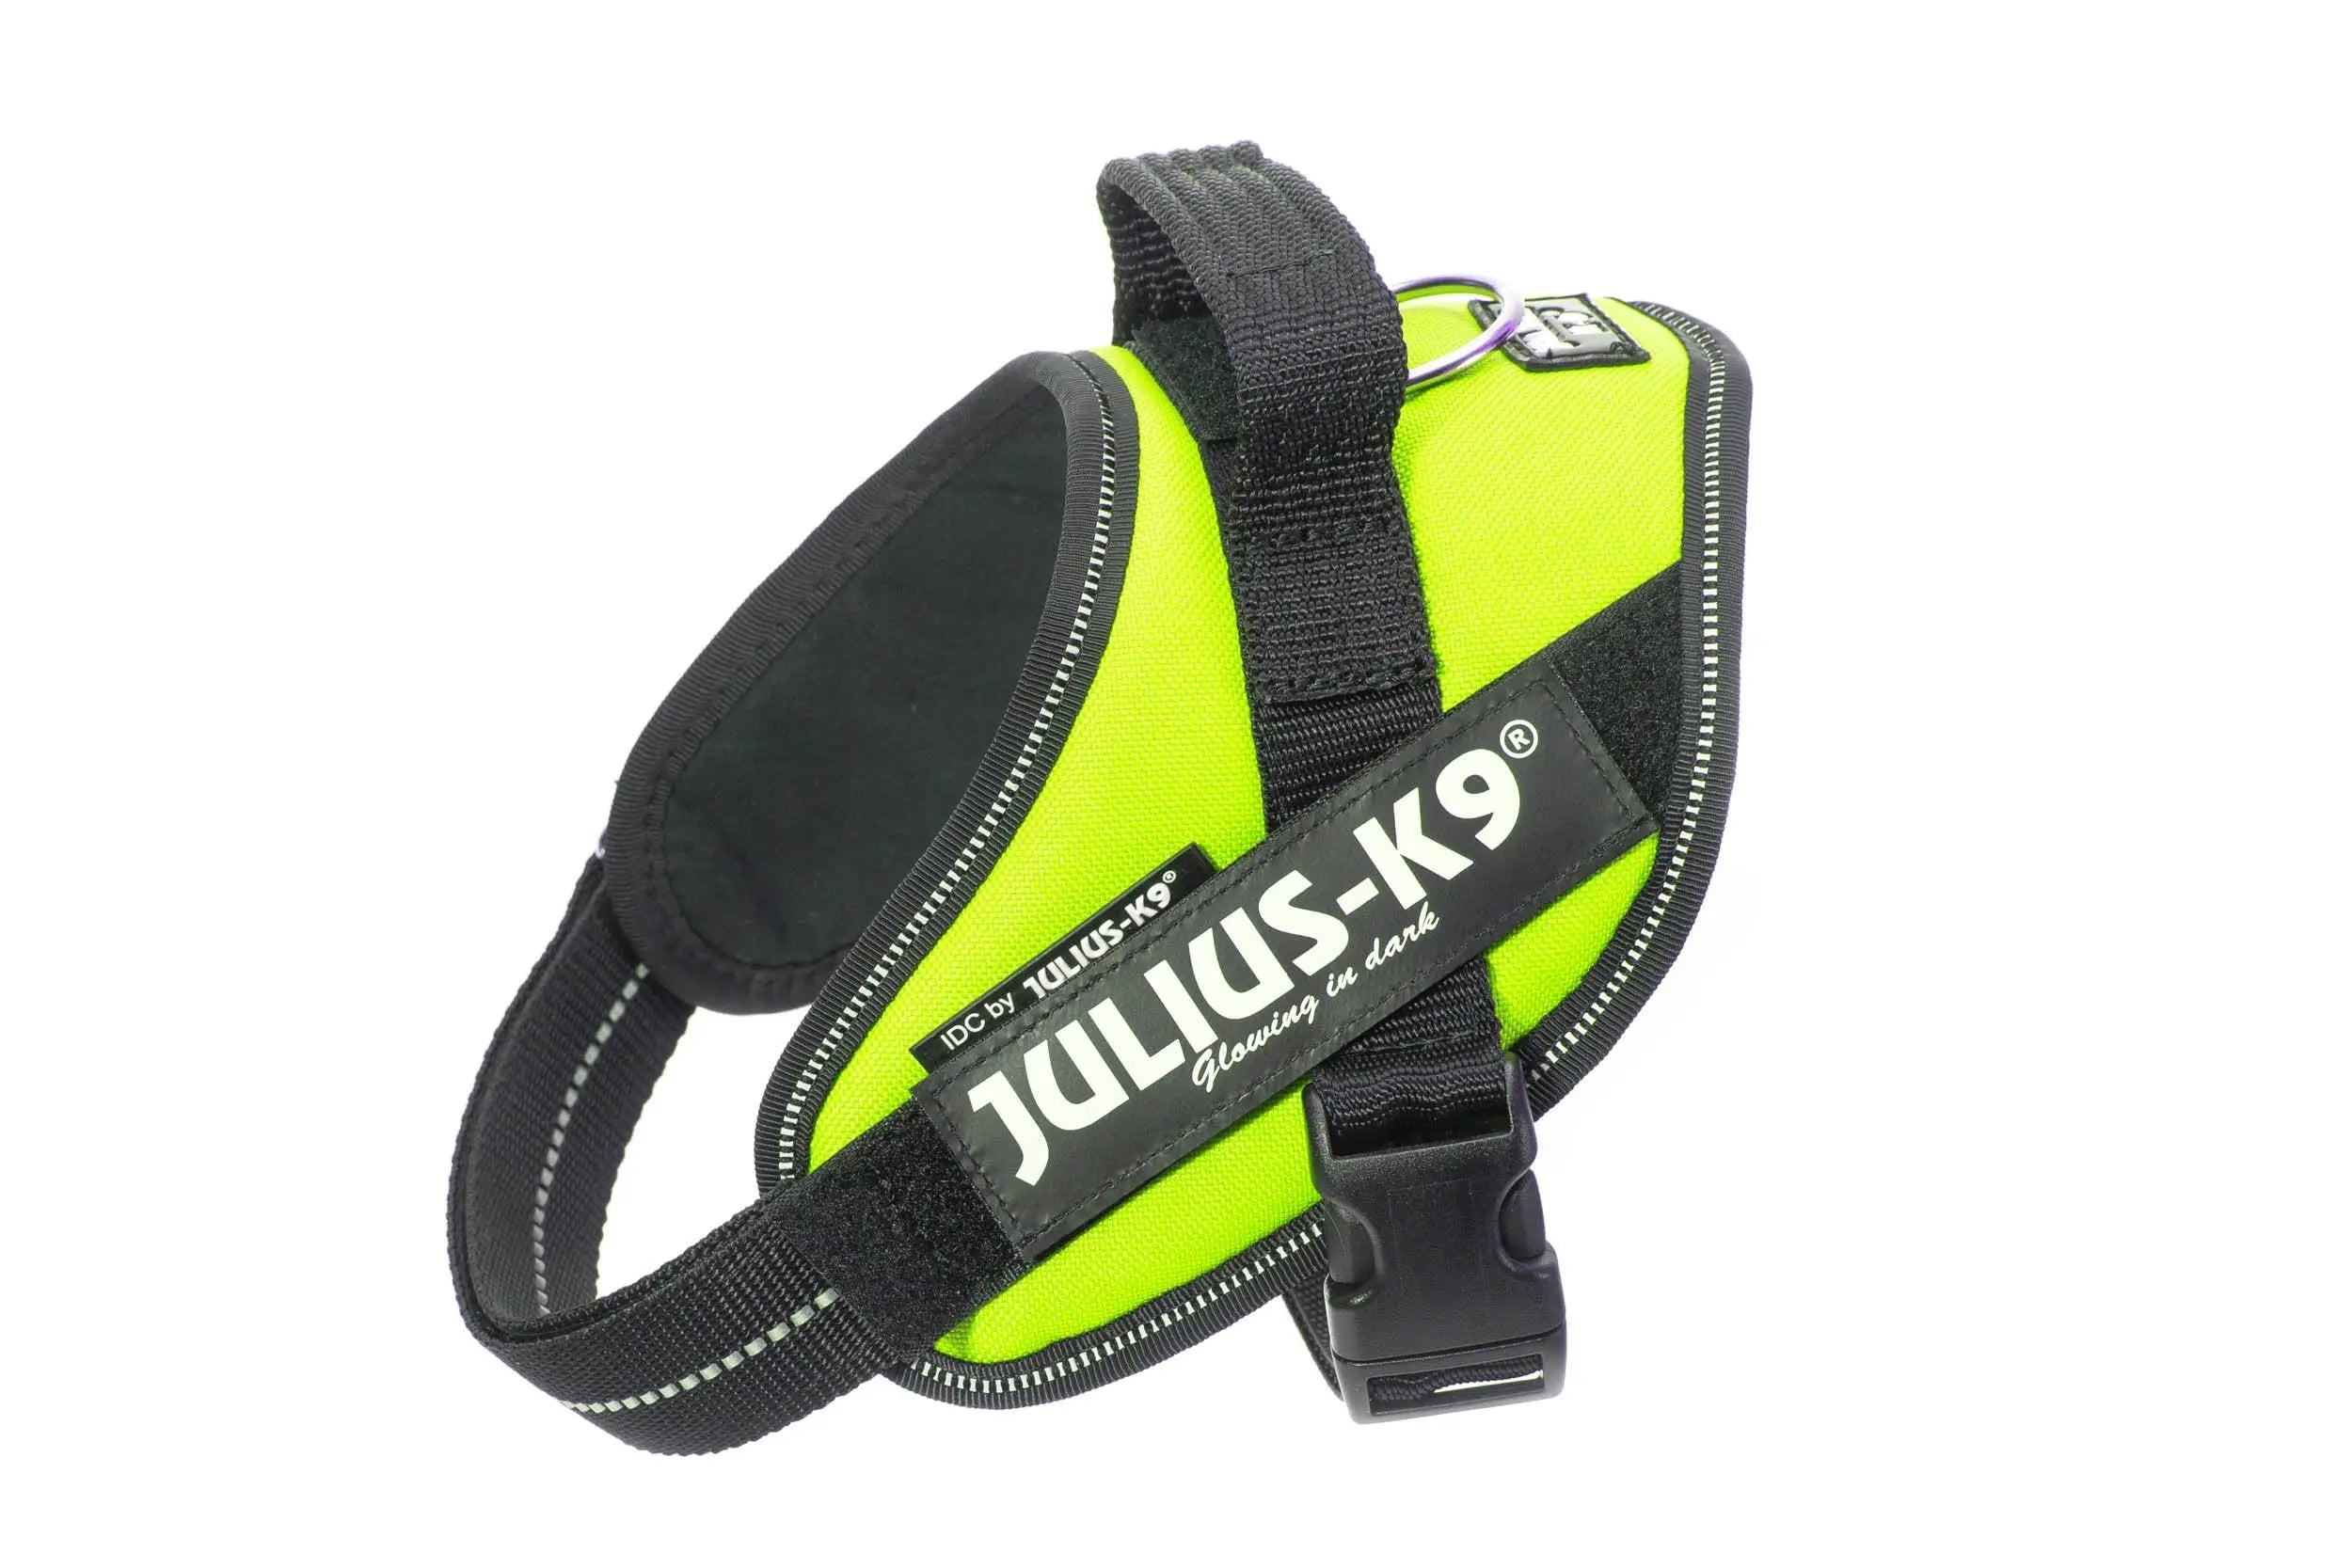 JULIUS-K9 IDC Powerair Dog Harness, Neon, Size 2: 28 to 37.5-in